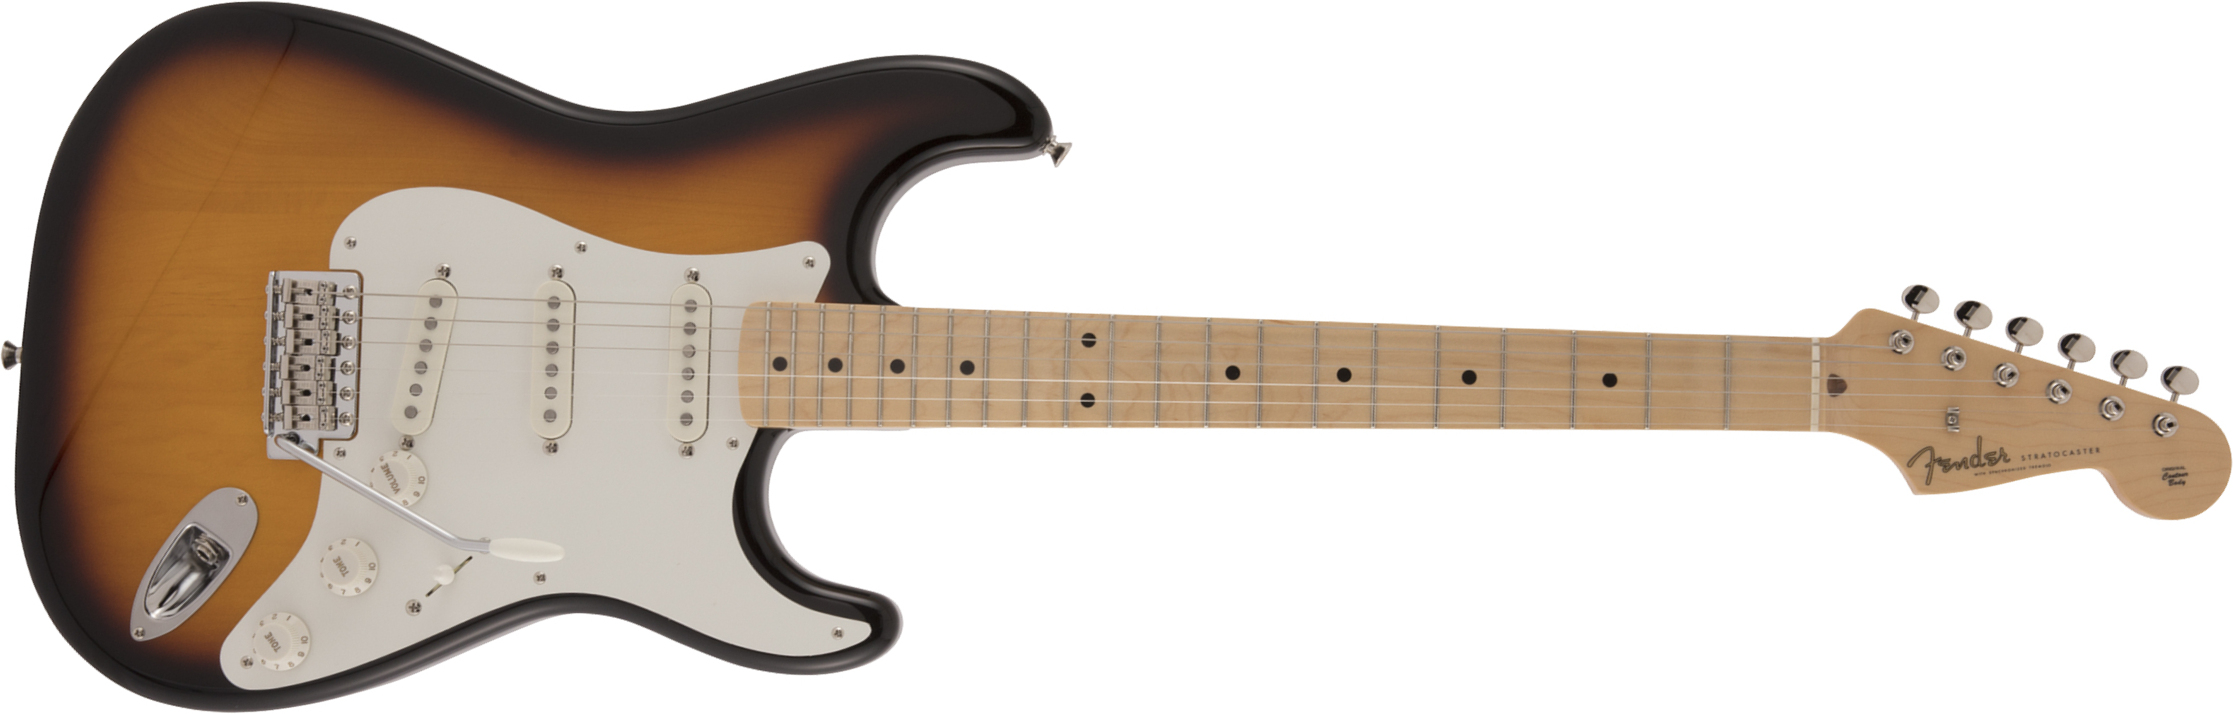 Fender Strat Traditional 50s Jap Mn - 2-color Sunburst - Guitare Électrique Forme Str - Main picture